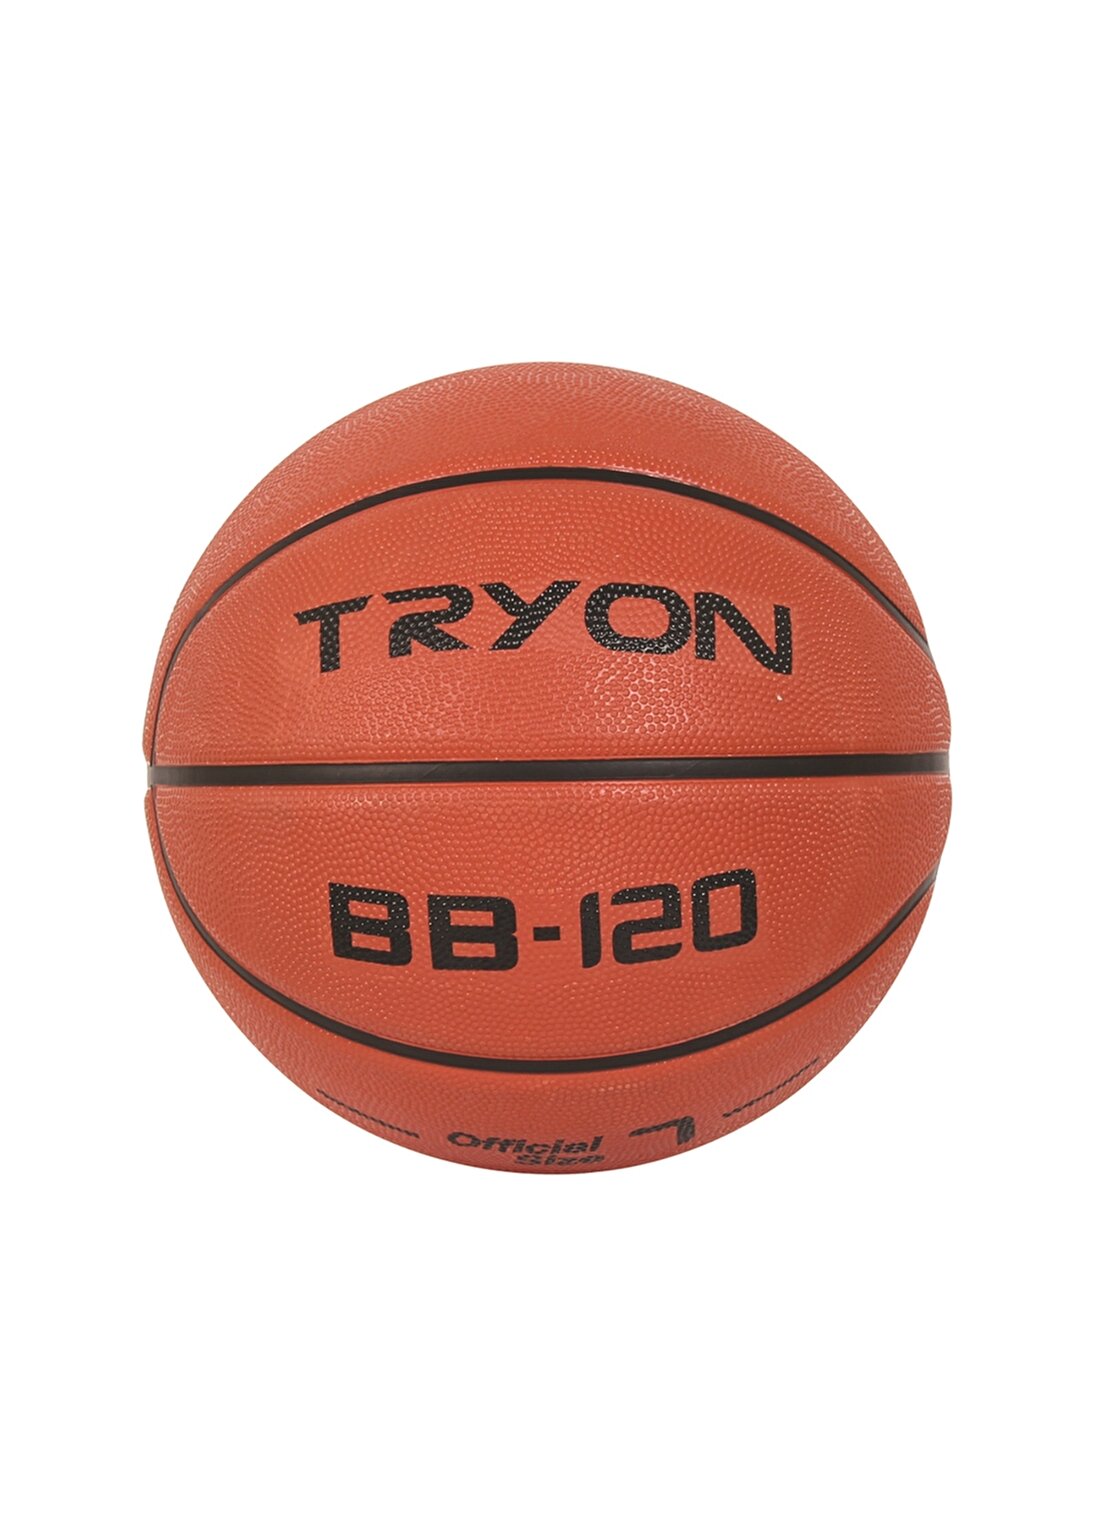 Tryon Basketbol Topu BB-120-20.060 Basketbol Topu